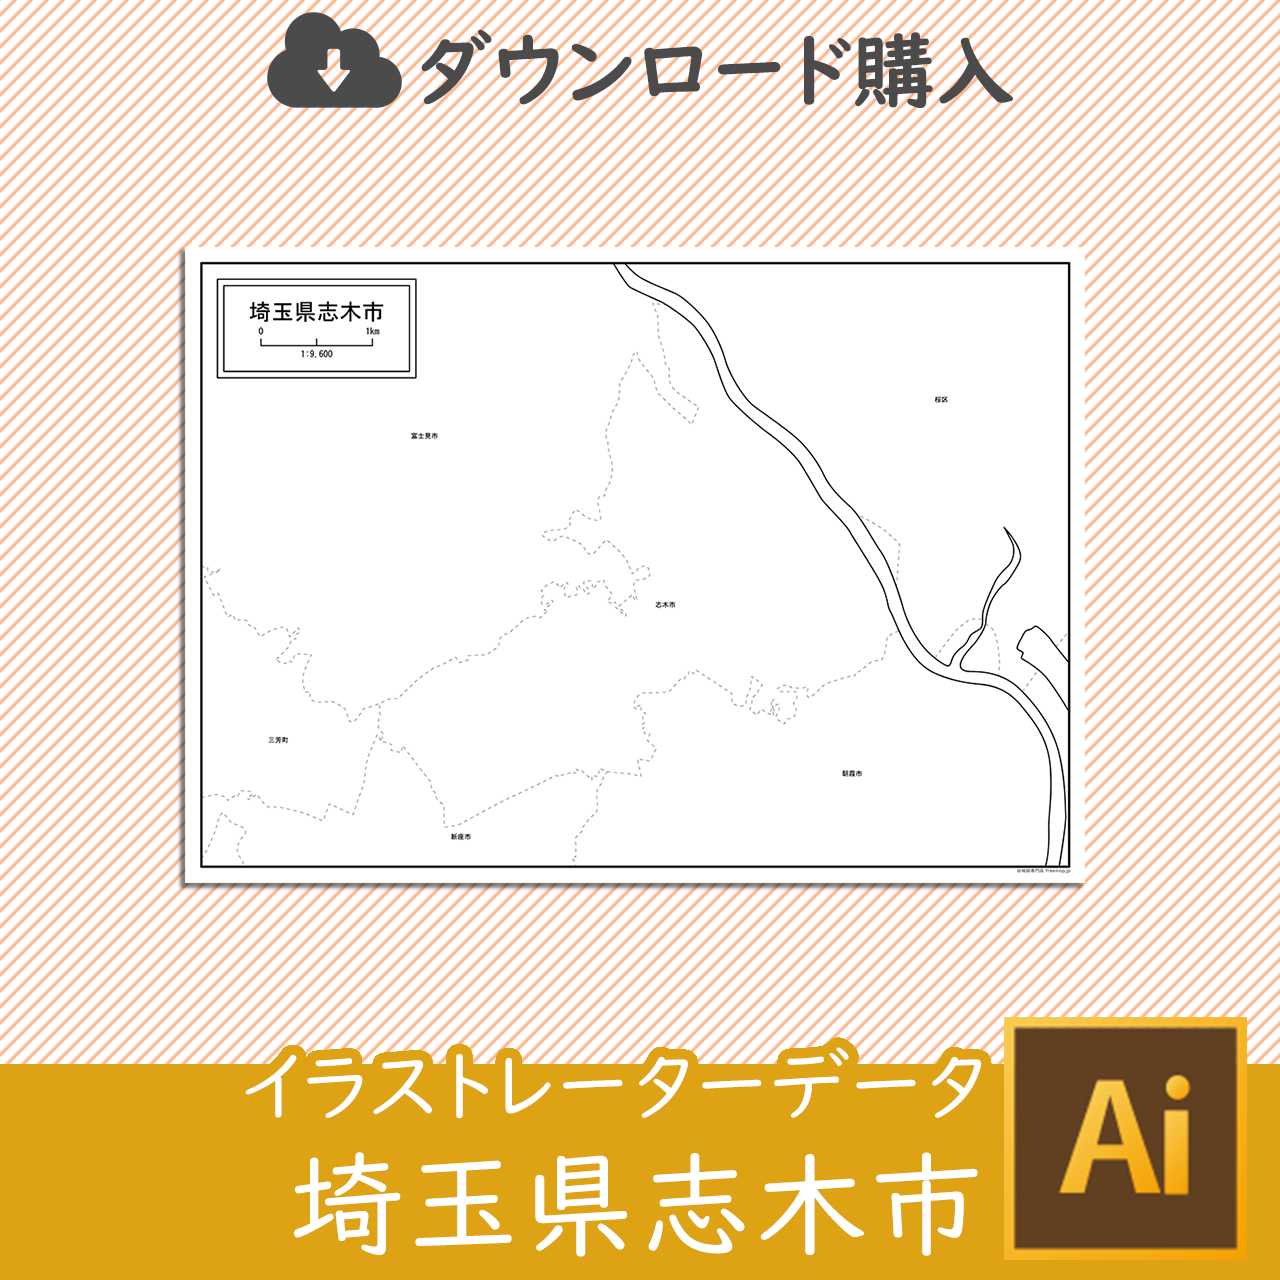 志木市のaiデータのサムネイル画像